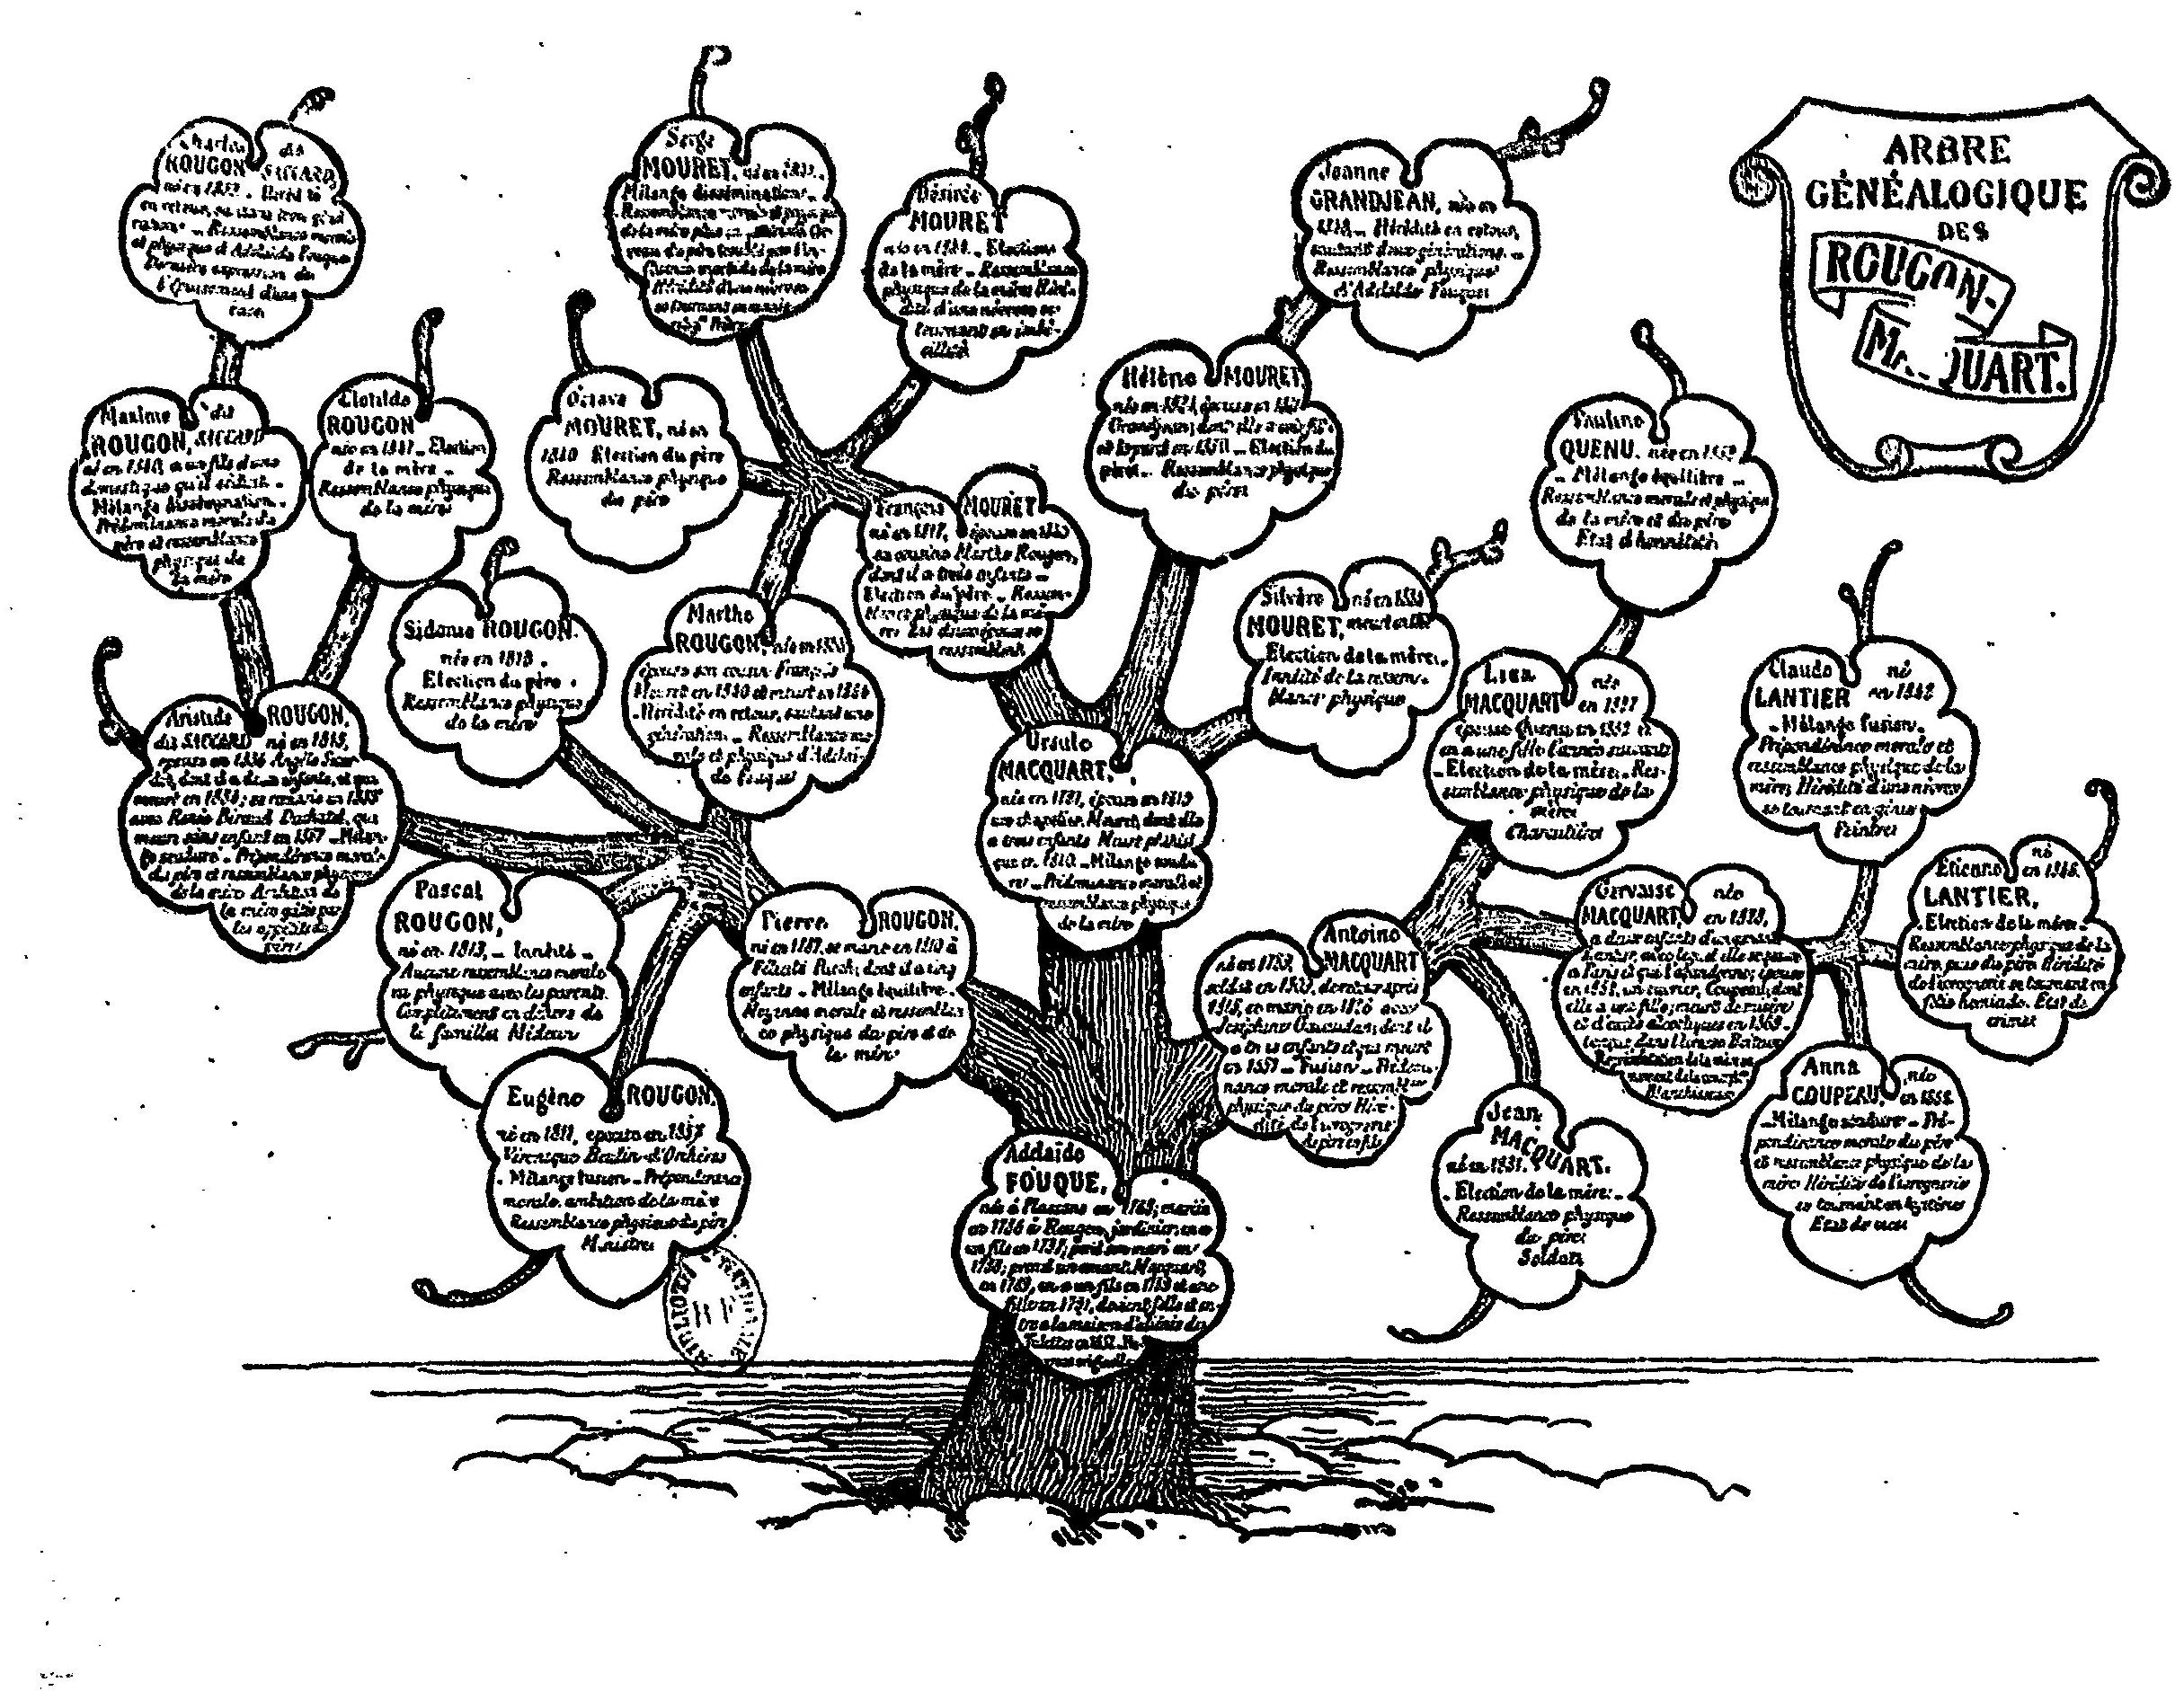 L'arbre généalogique de la famille Rougon-Macquart